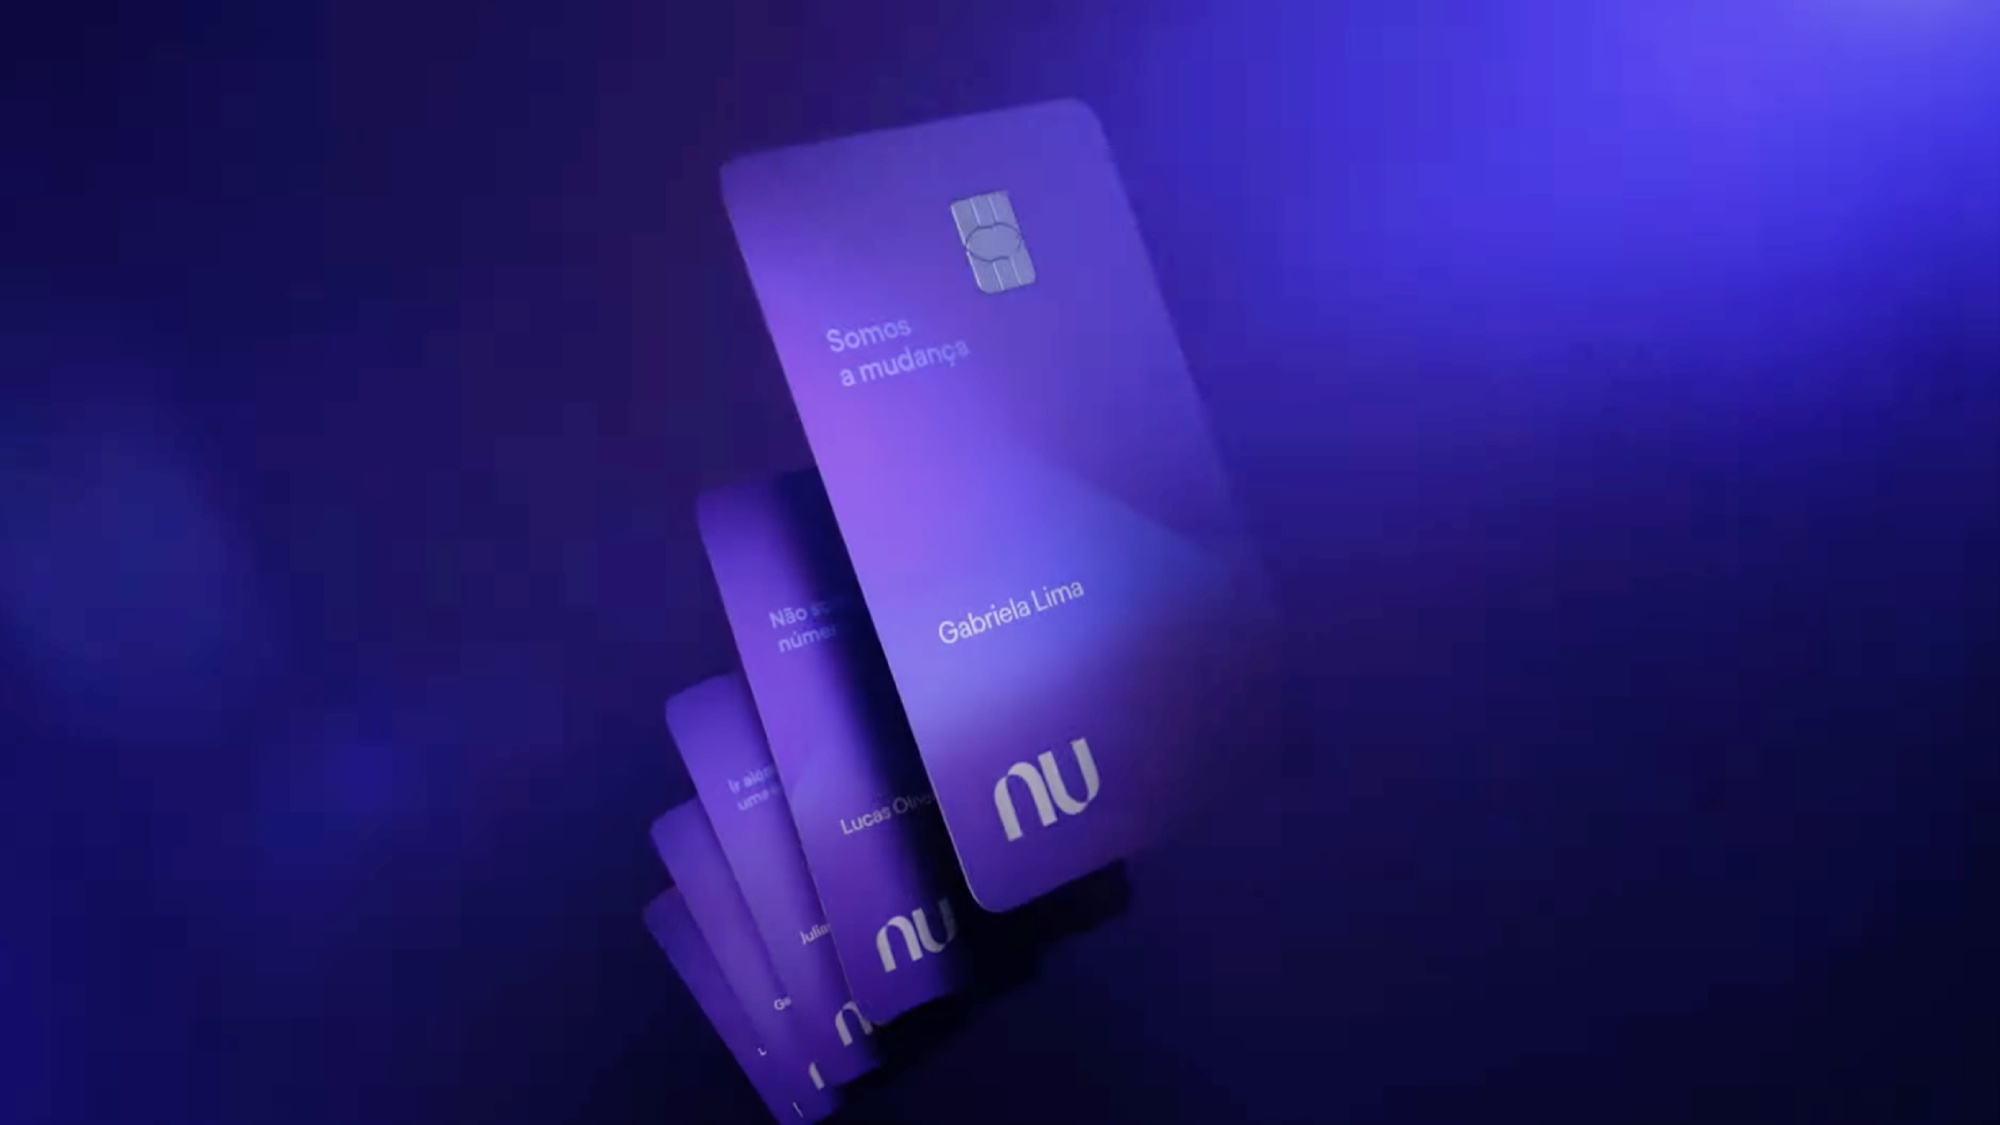 Nubank lança cartão Ultravioleta com cashback e confirma suporte a Apple Pay | Finanças